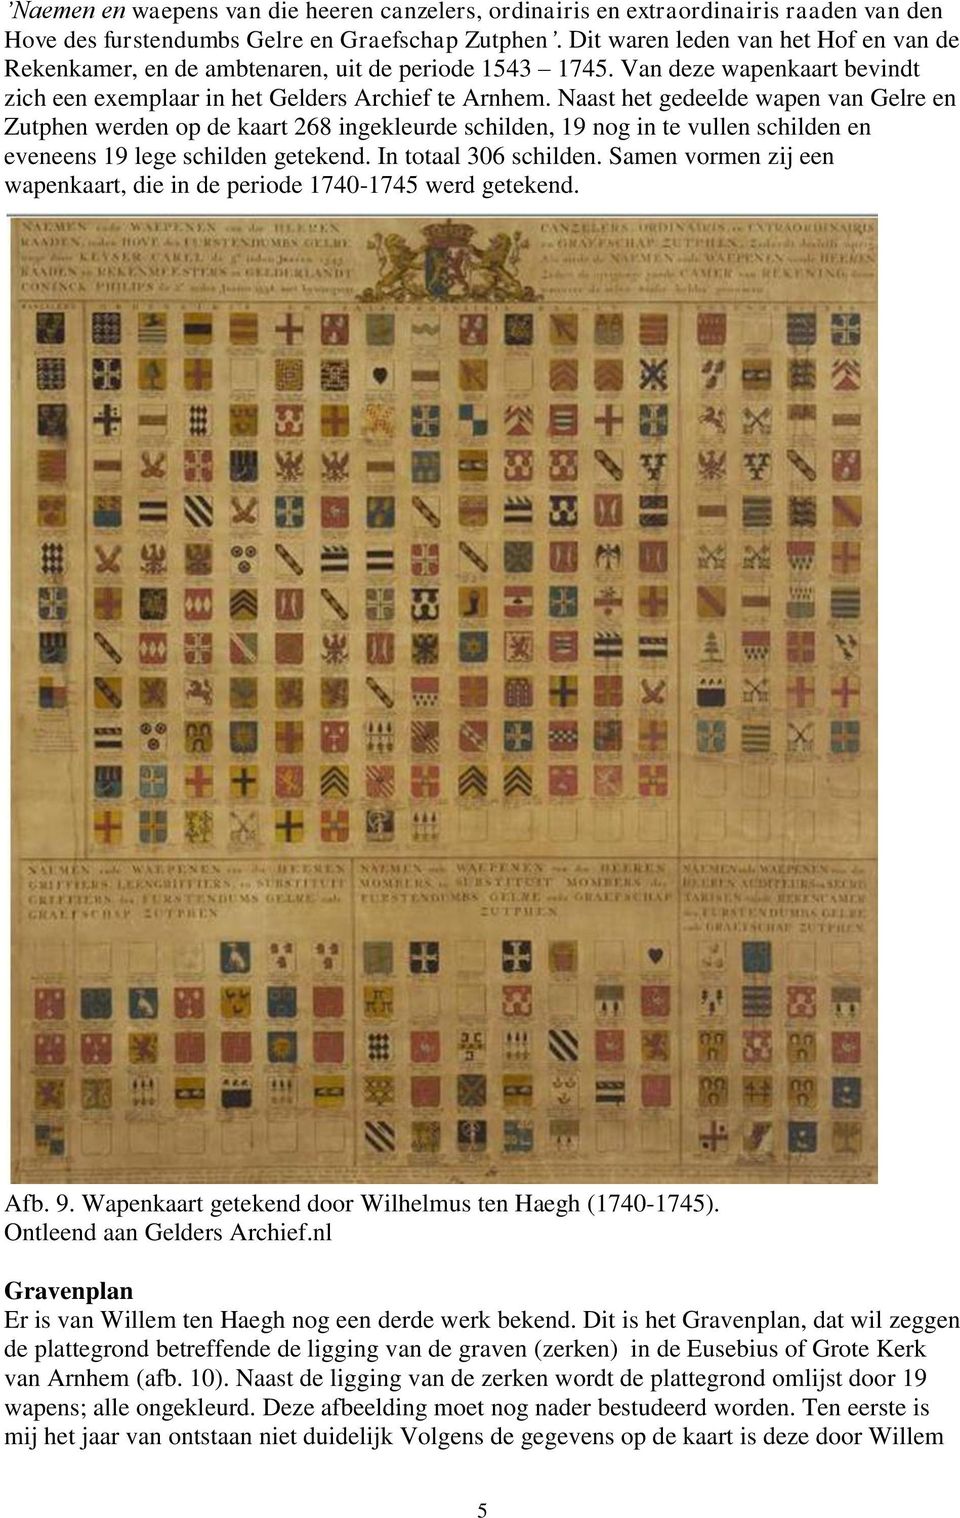 Naast het gedeelde wapen van Gelre en Zutphen werden op de kaart 268 ingekleurde schilden, 19 nog in te vullen schilden en eveneens 19 lege schilden getekend. In totaal 306 schilden.